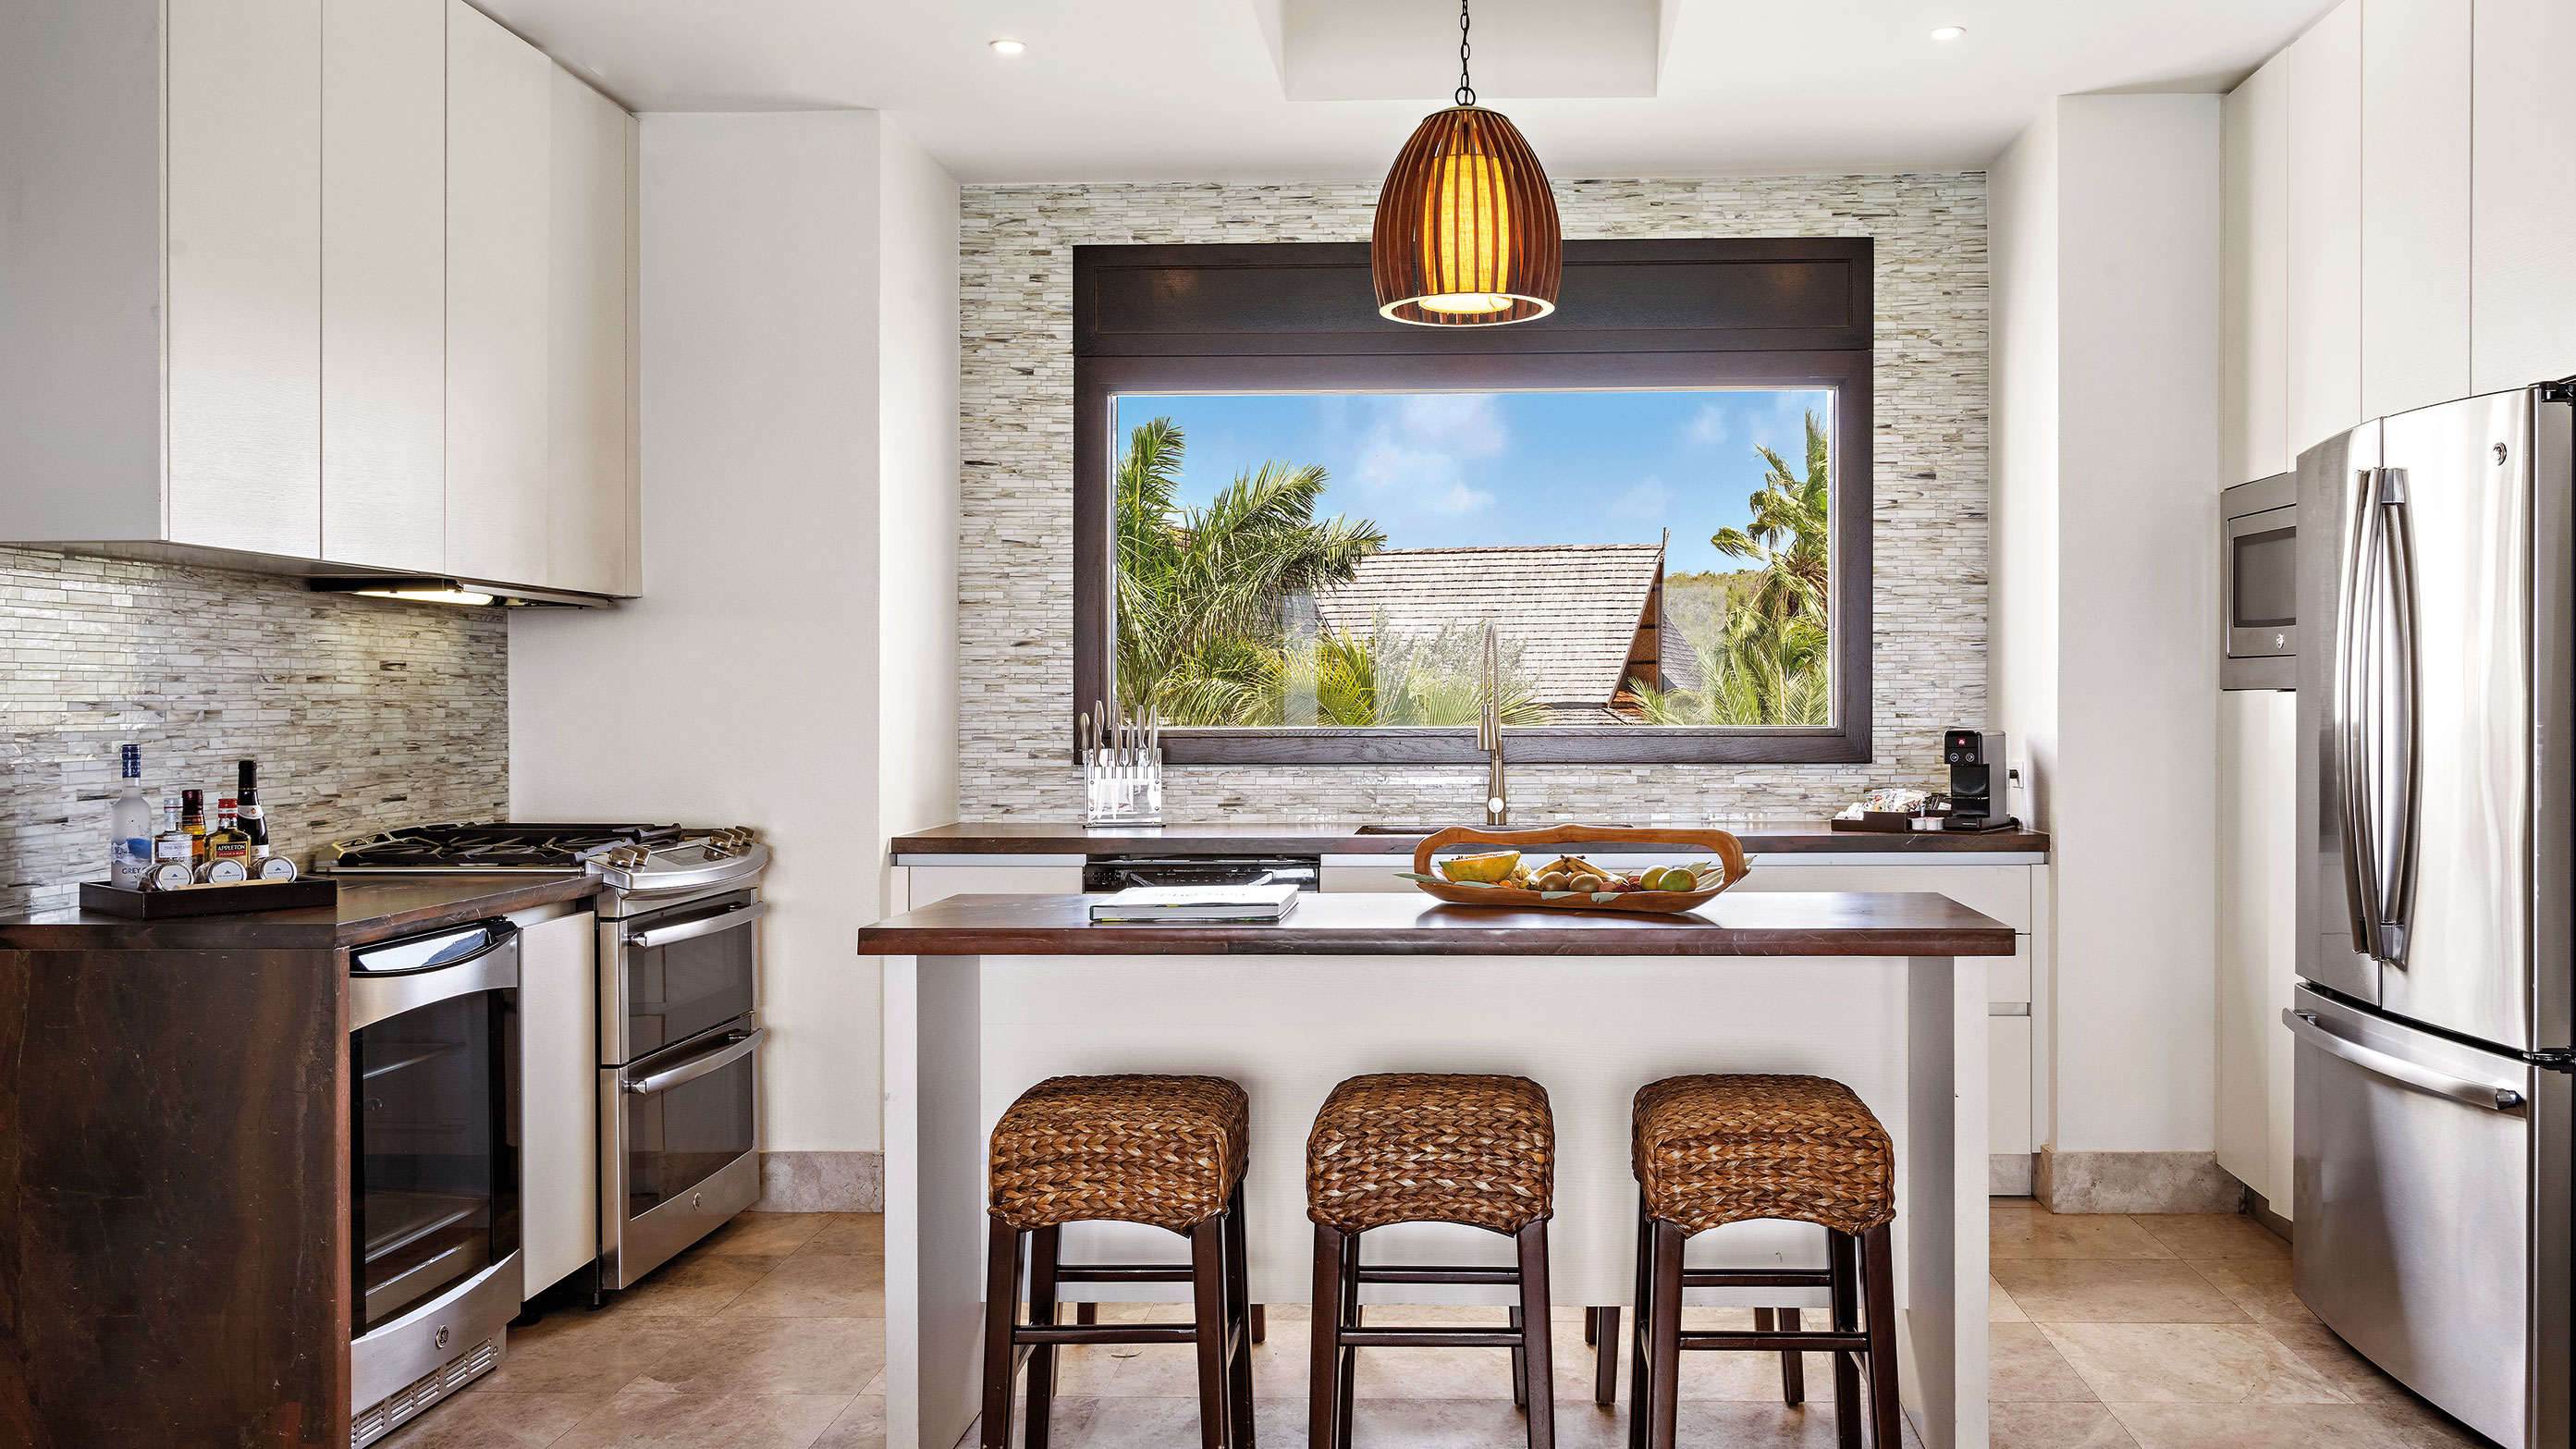 Ilha de cozinha, banquetas, cozinha completa e vista das palmeiras da janela